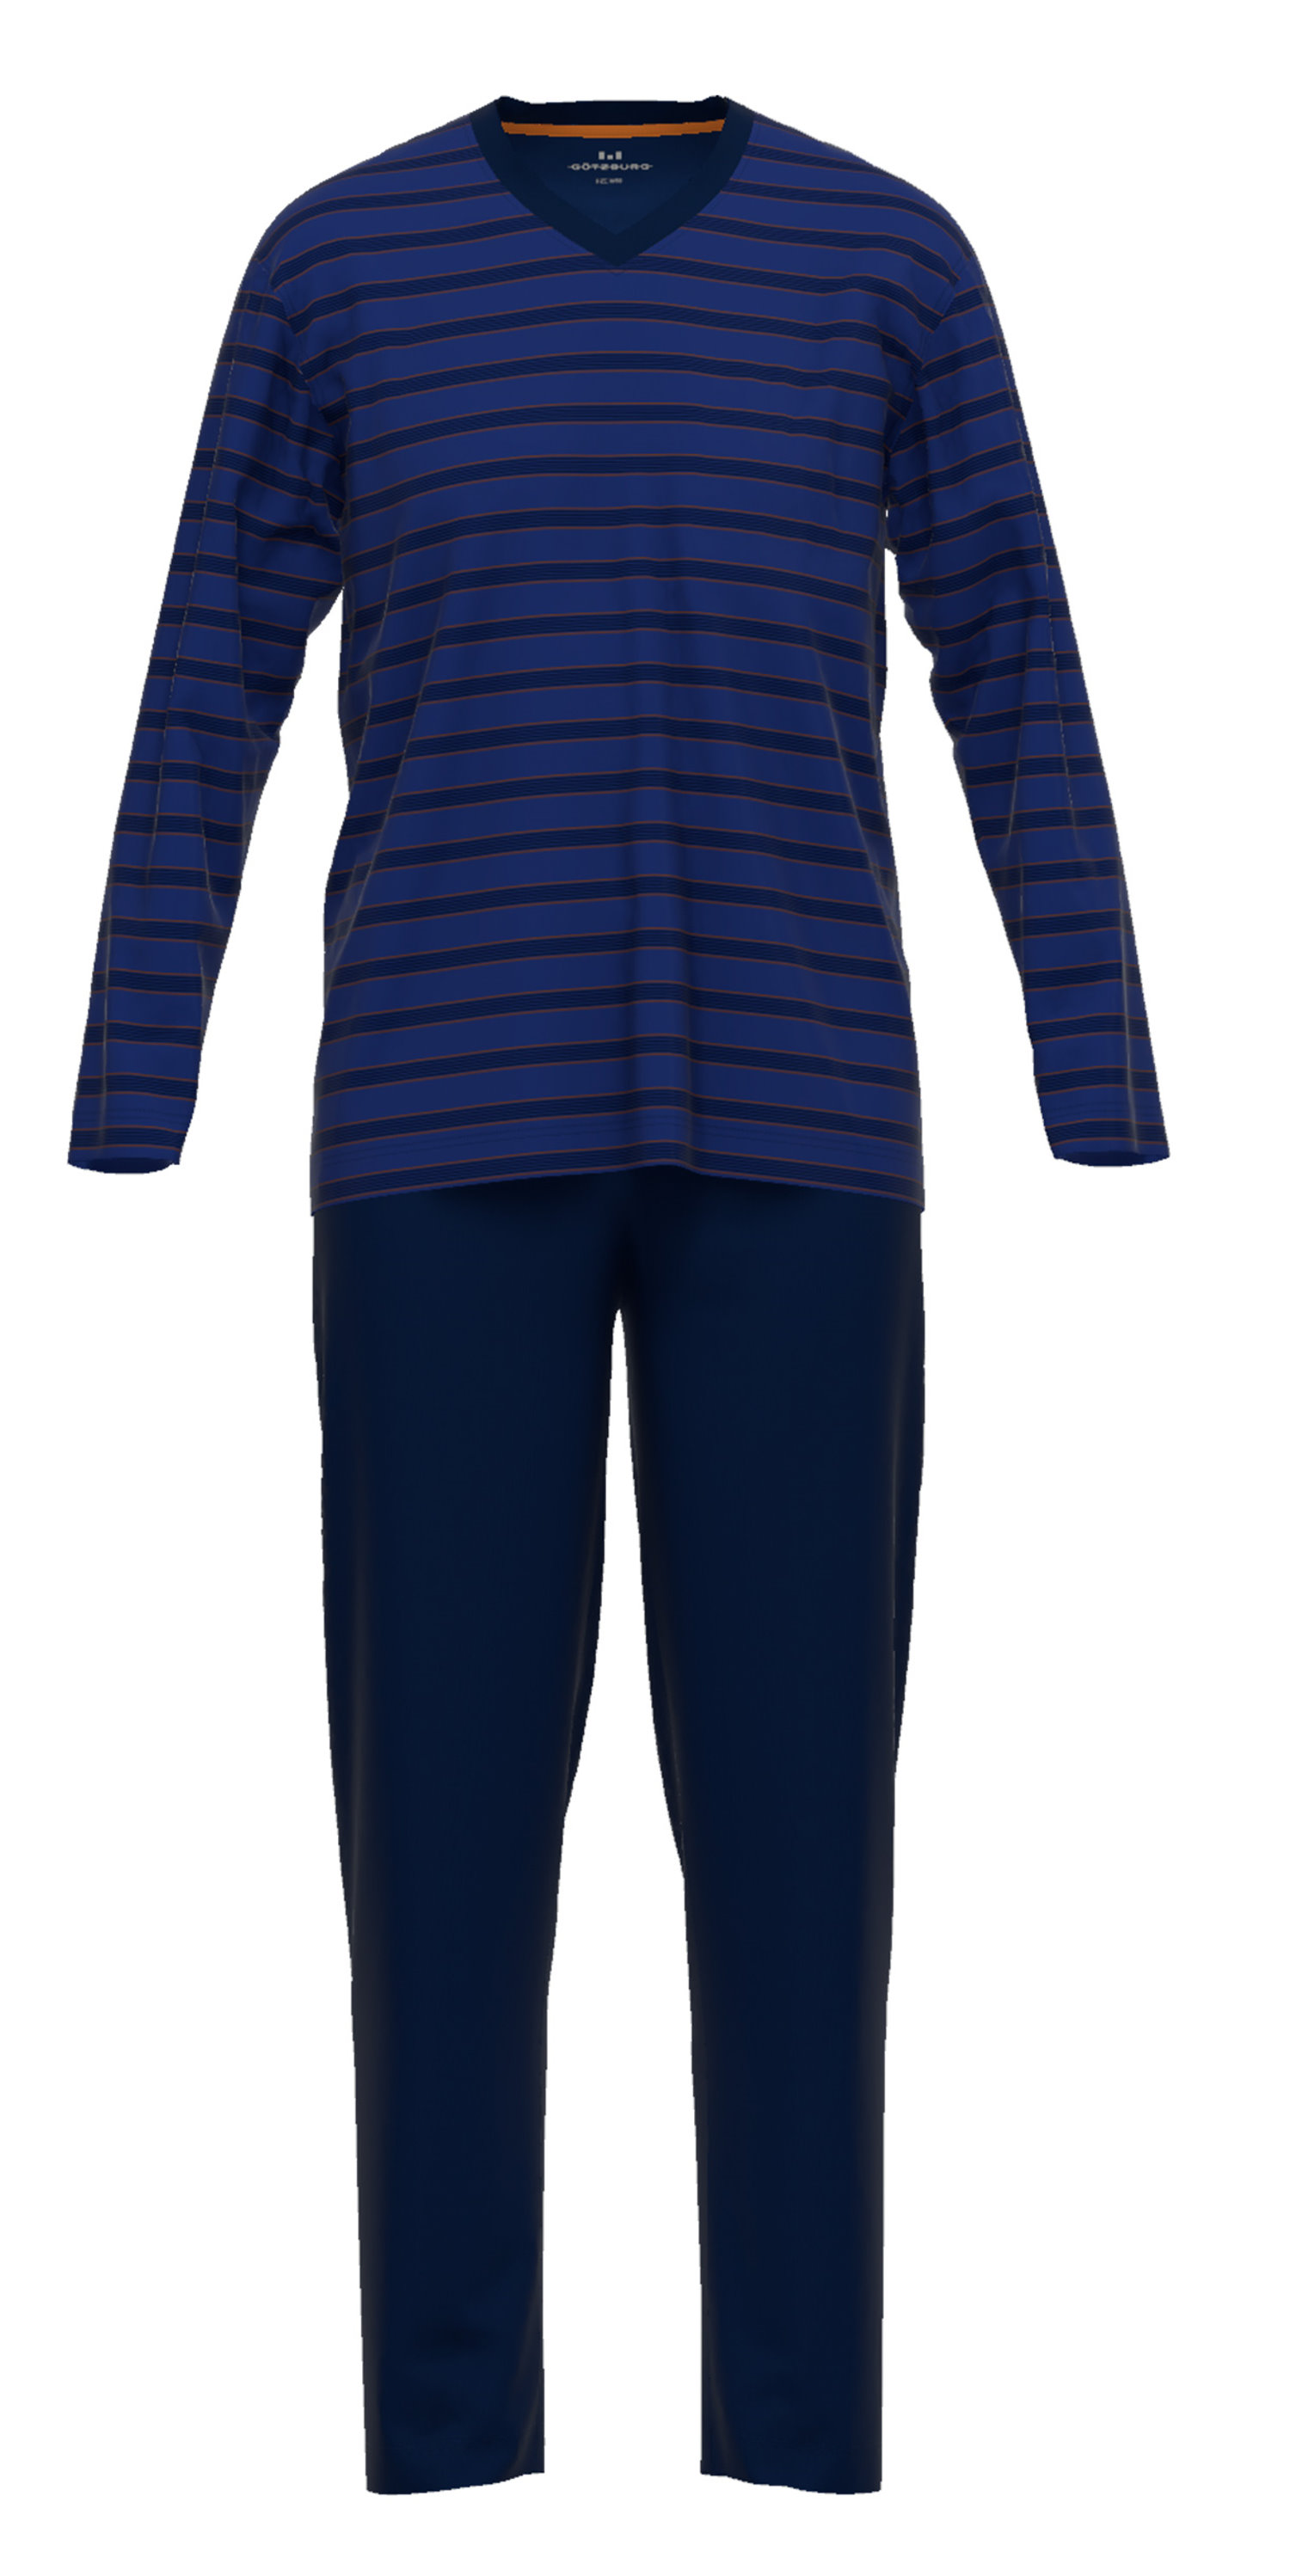 | 652 Qualität Baumwolle Pyjama Herren eBay Jersey Schlafanzug 452208 Götzburg